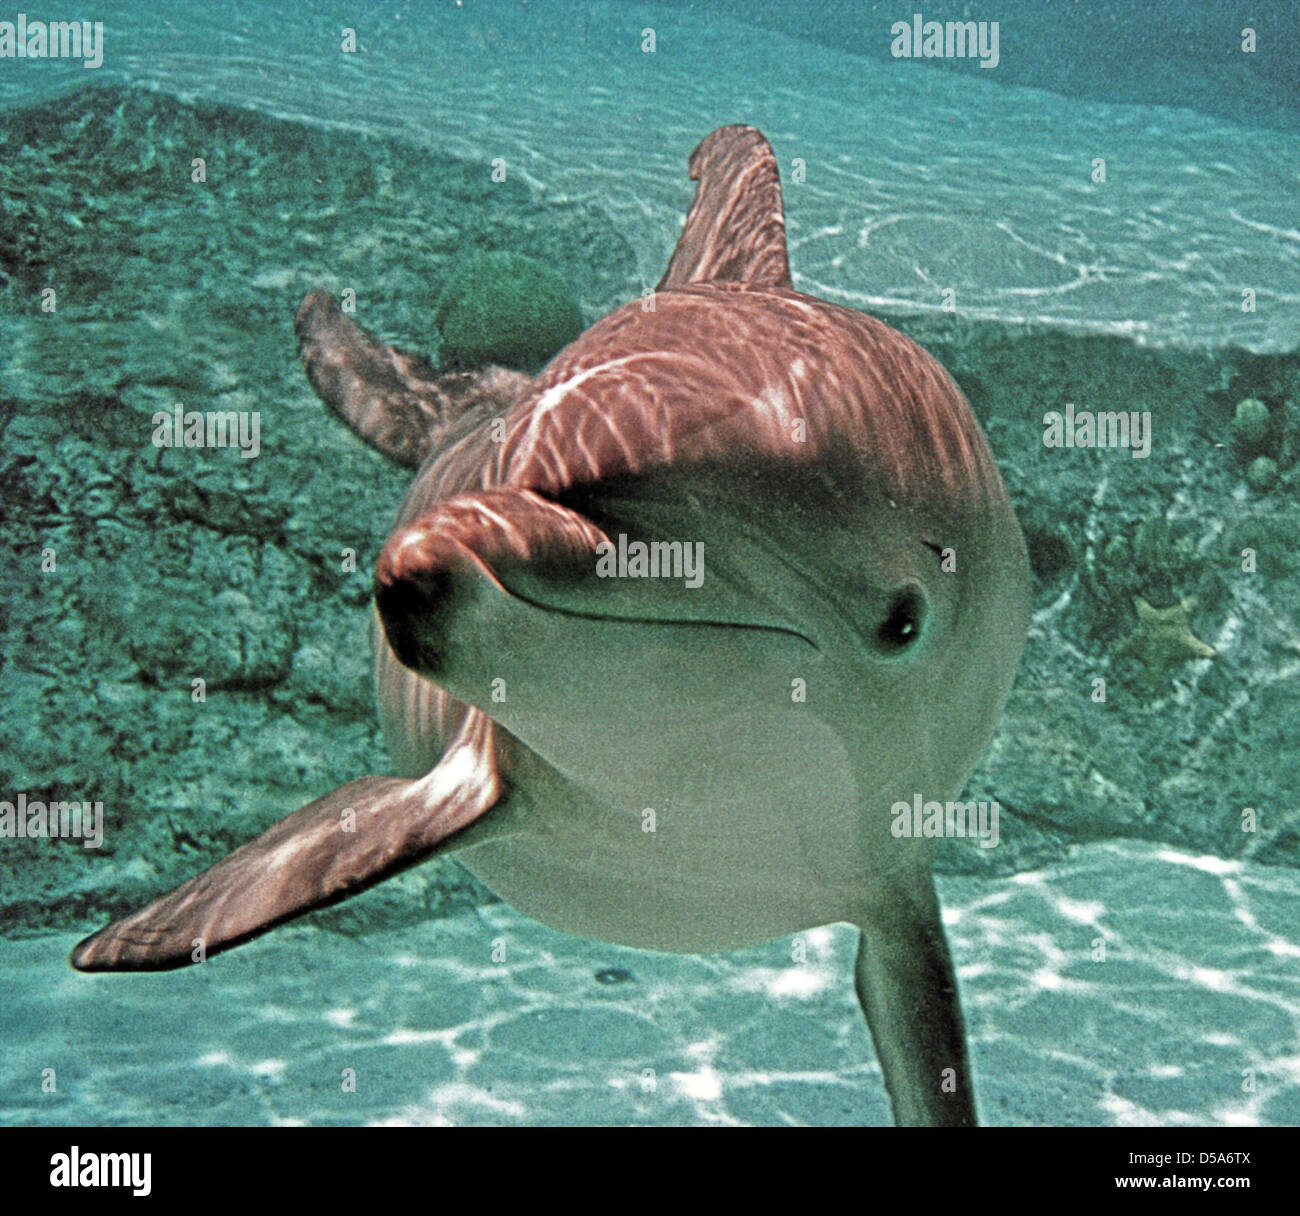 Große Tümmler, die Gattung Tursiops, sind die meisten Mitglieder der Familie Delphinidae, die Familie der ozeanischen Dolphin. Aus den Archiven von Presse Portrait Service (ehemals Presse Portrait Bureau) Stockfoto